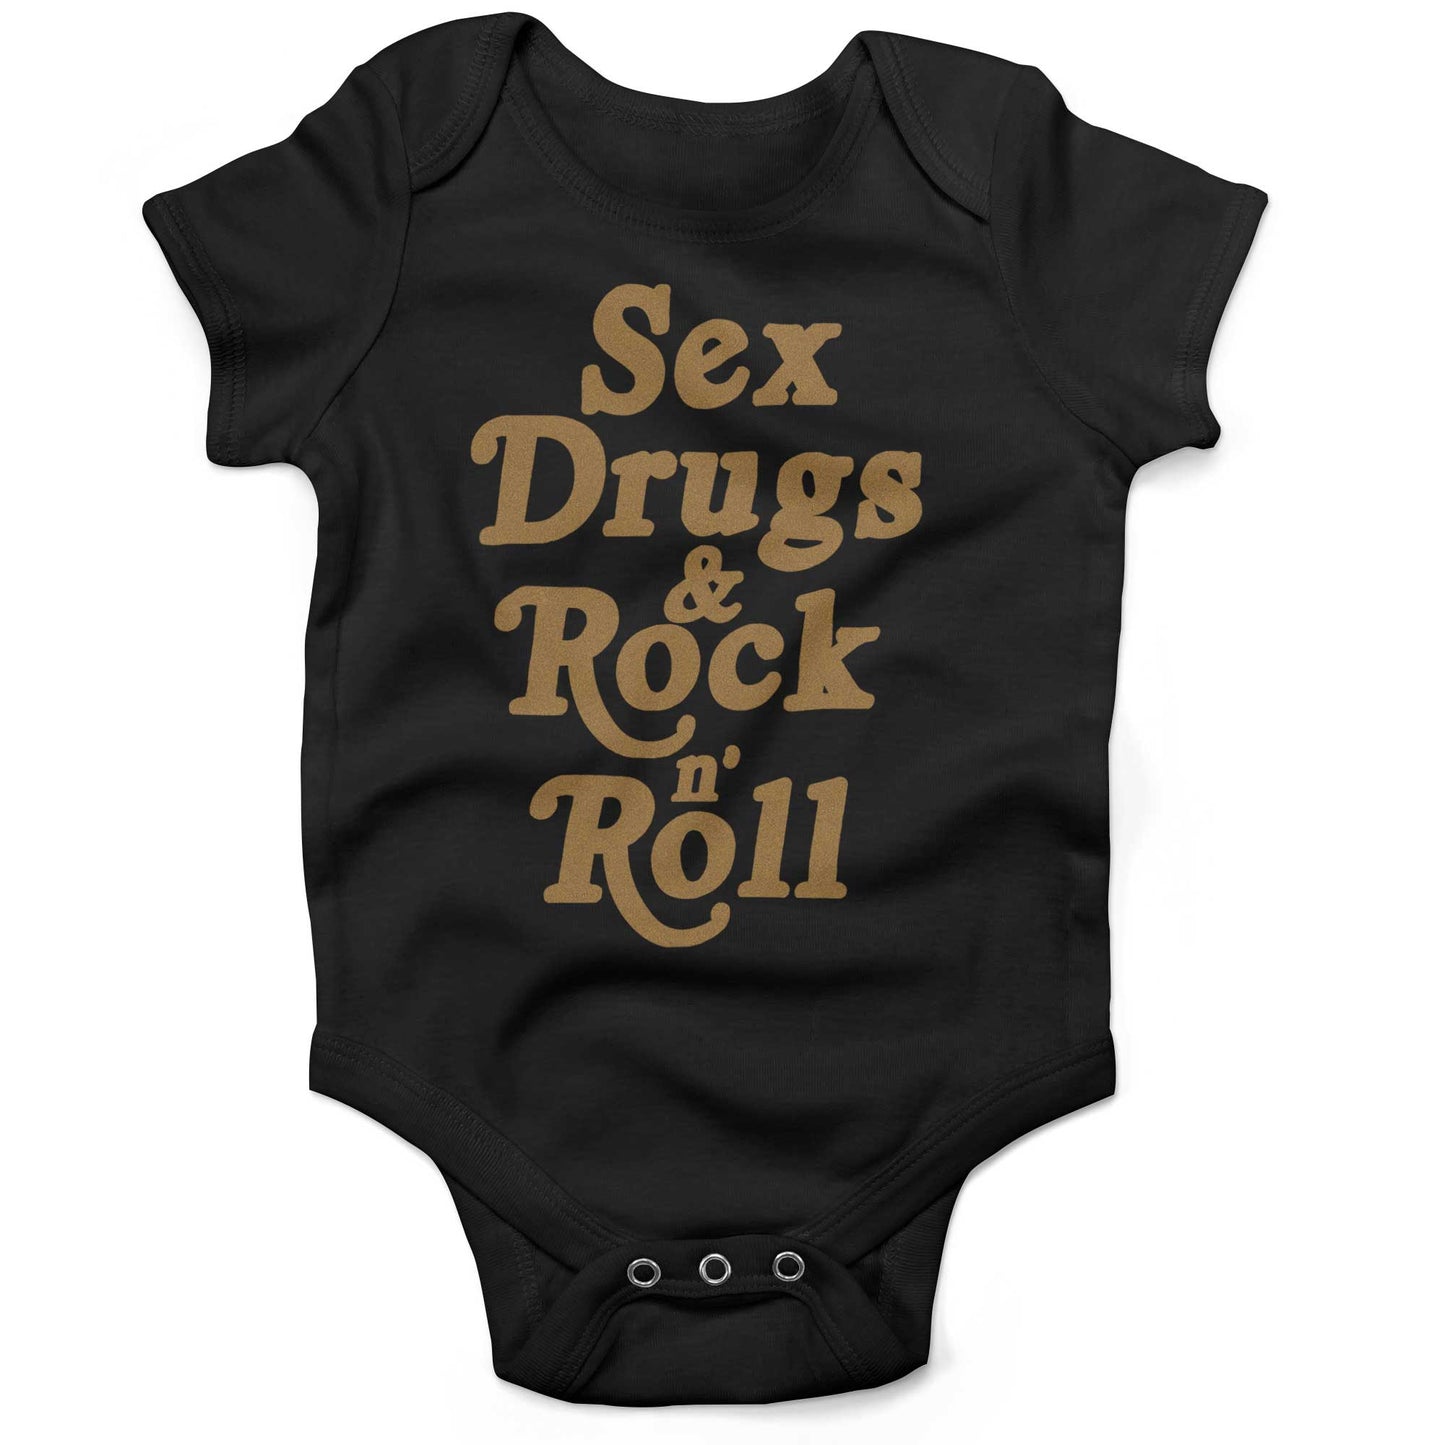 Sex, Drugs & Rock 'n Roll Infant Bodysuit or Raglan Baby Tee-Organic Black-3-6 months